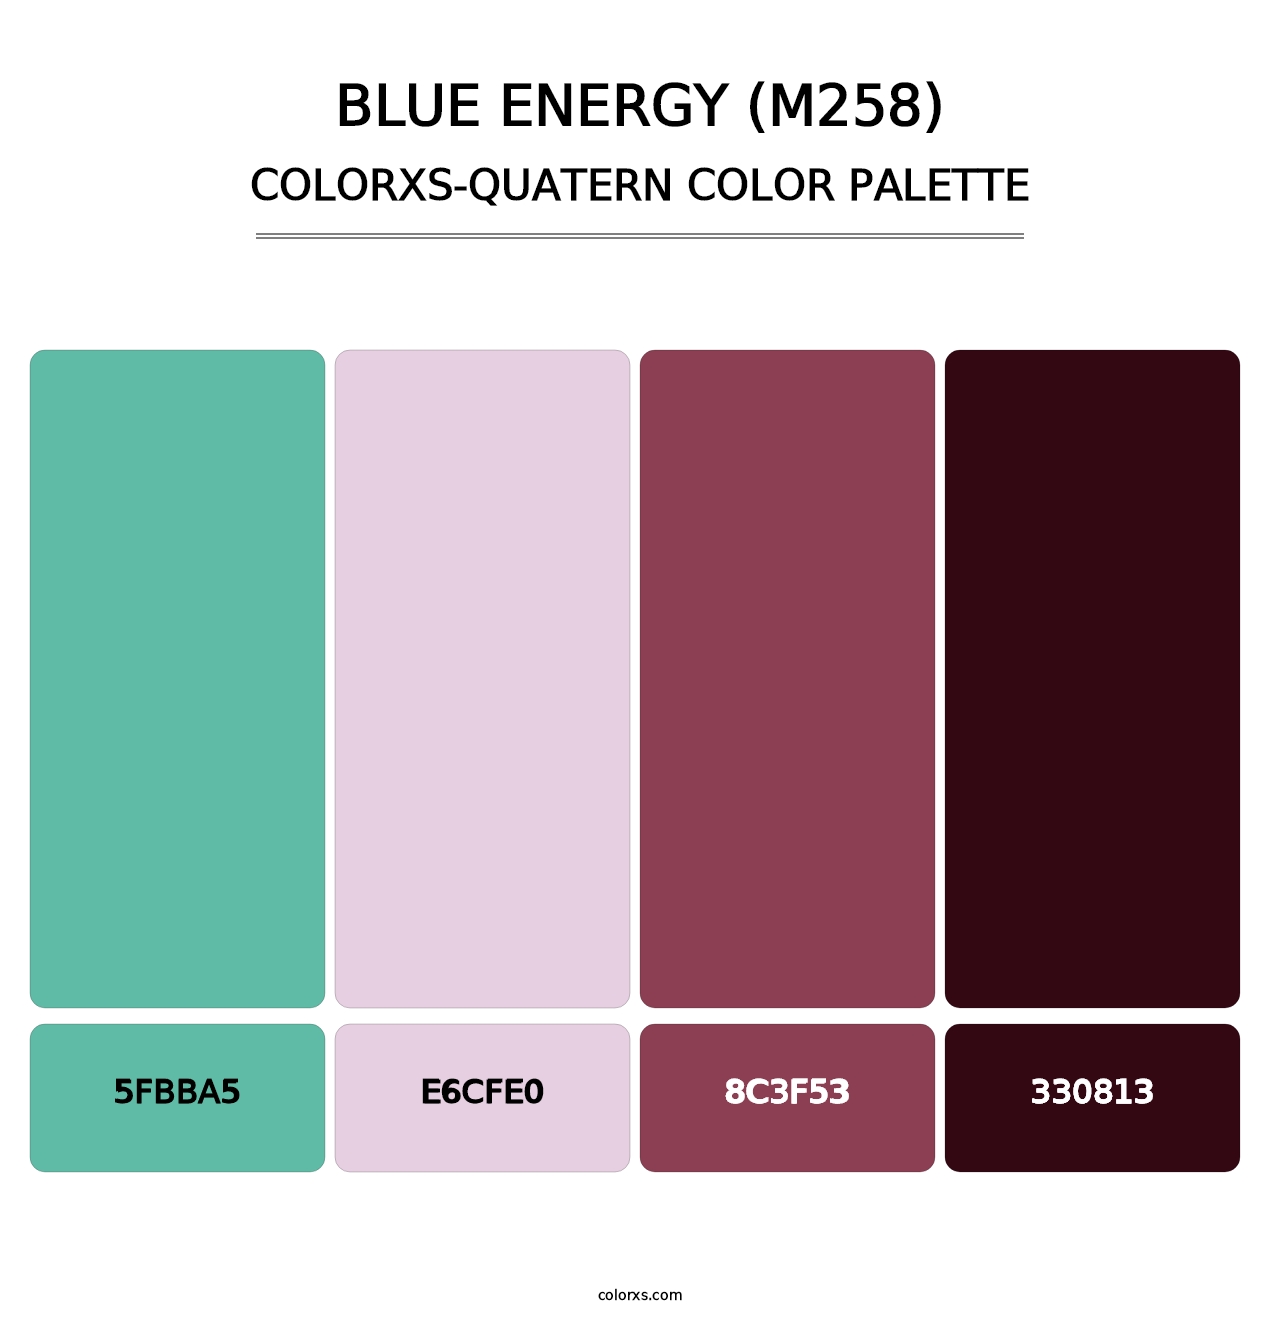 Blue Energy (M258) - Colorxs Quatern Palette